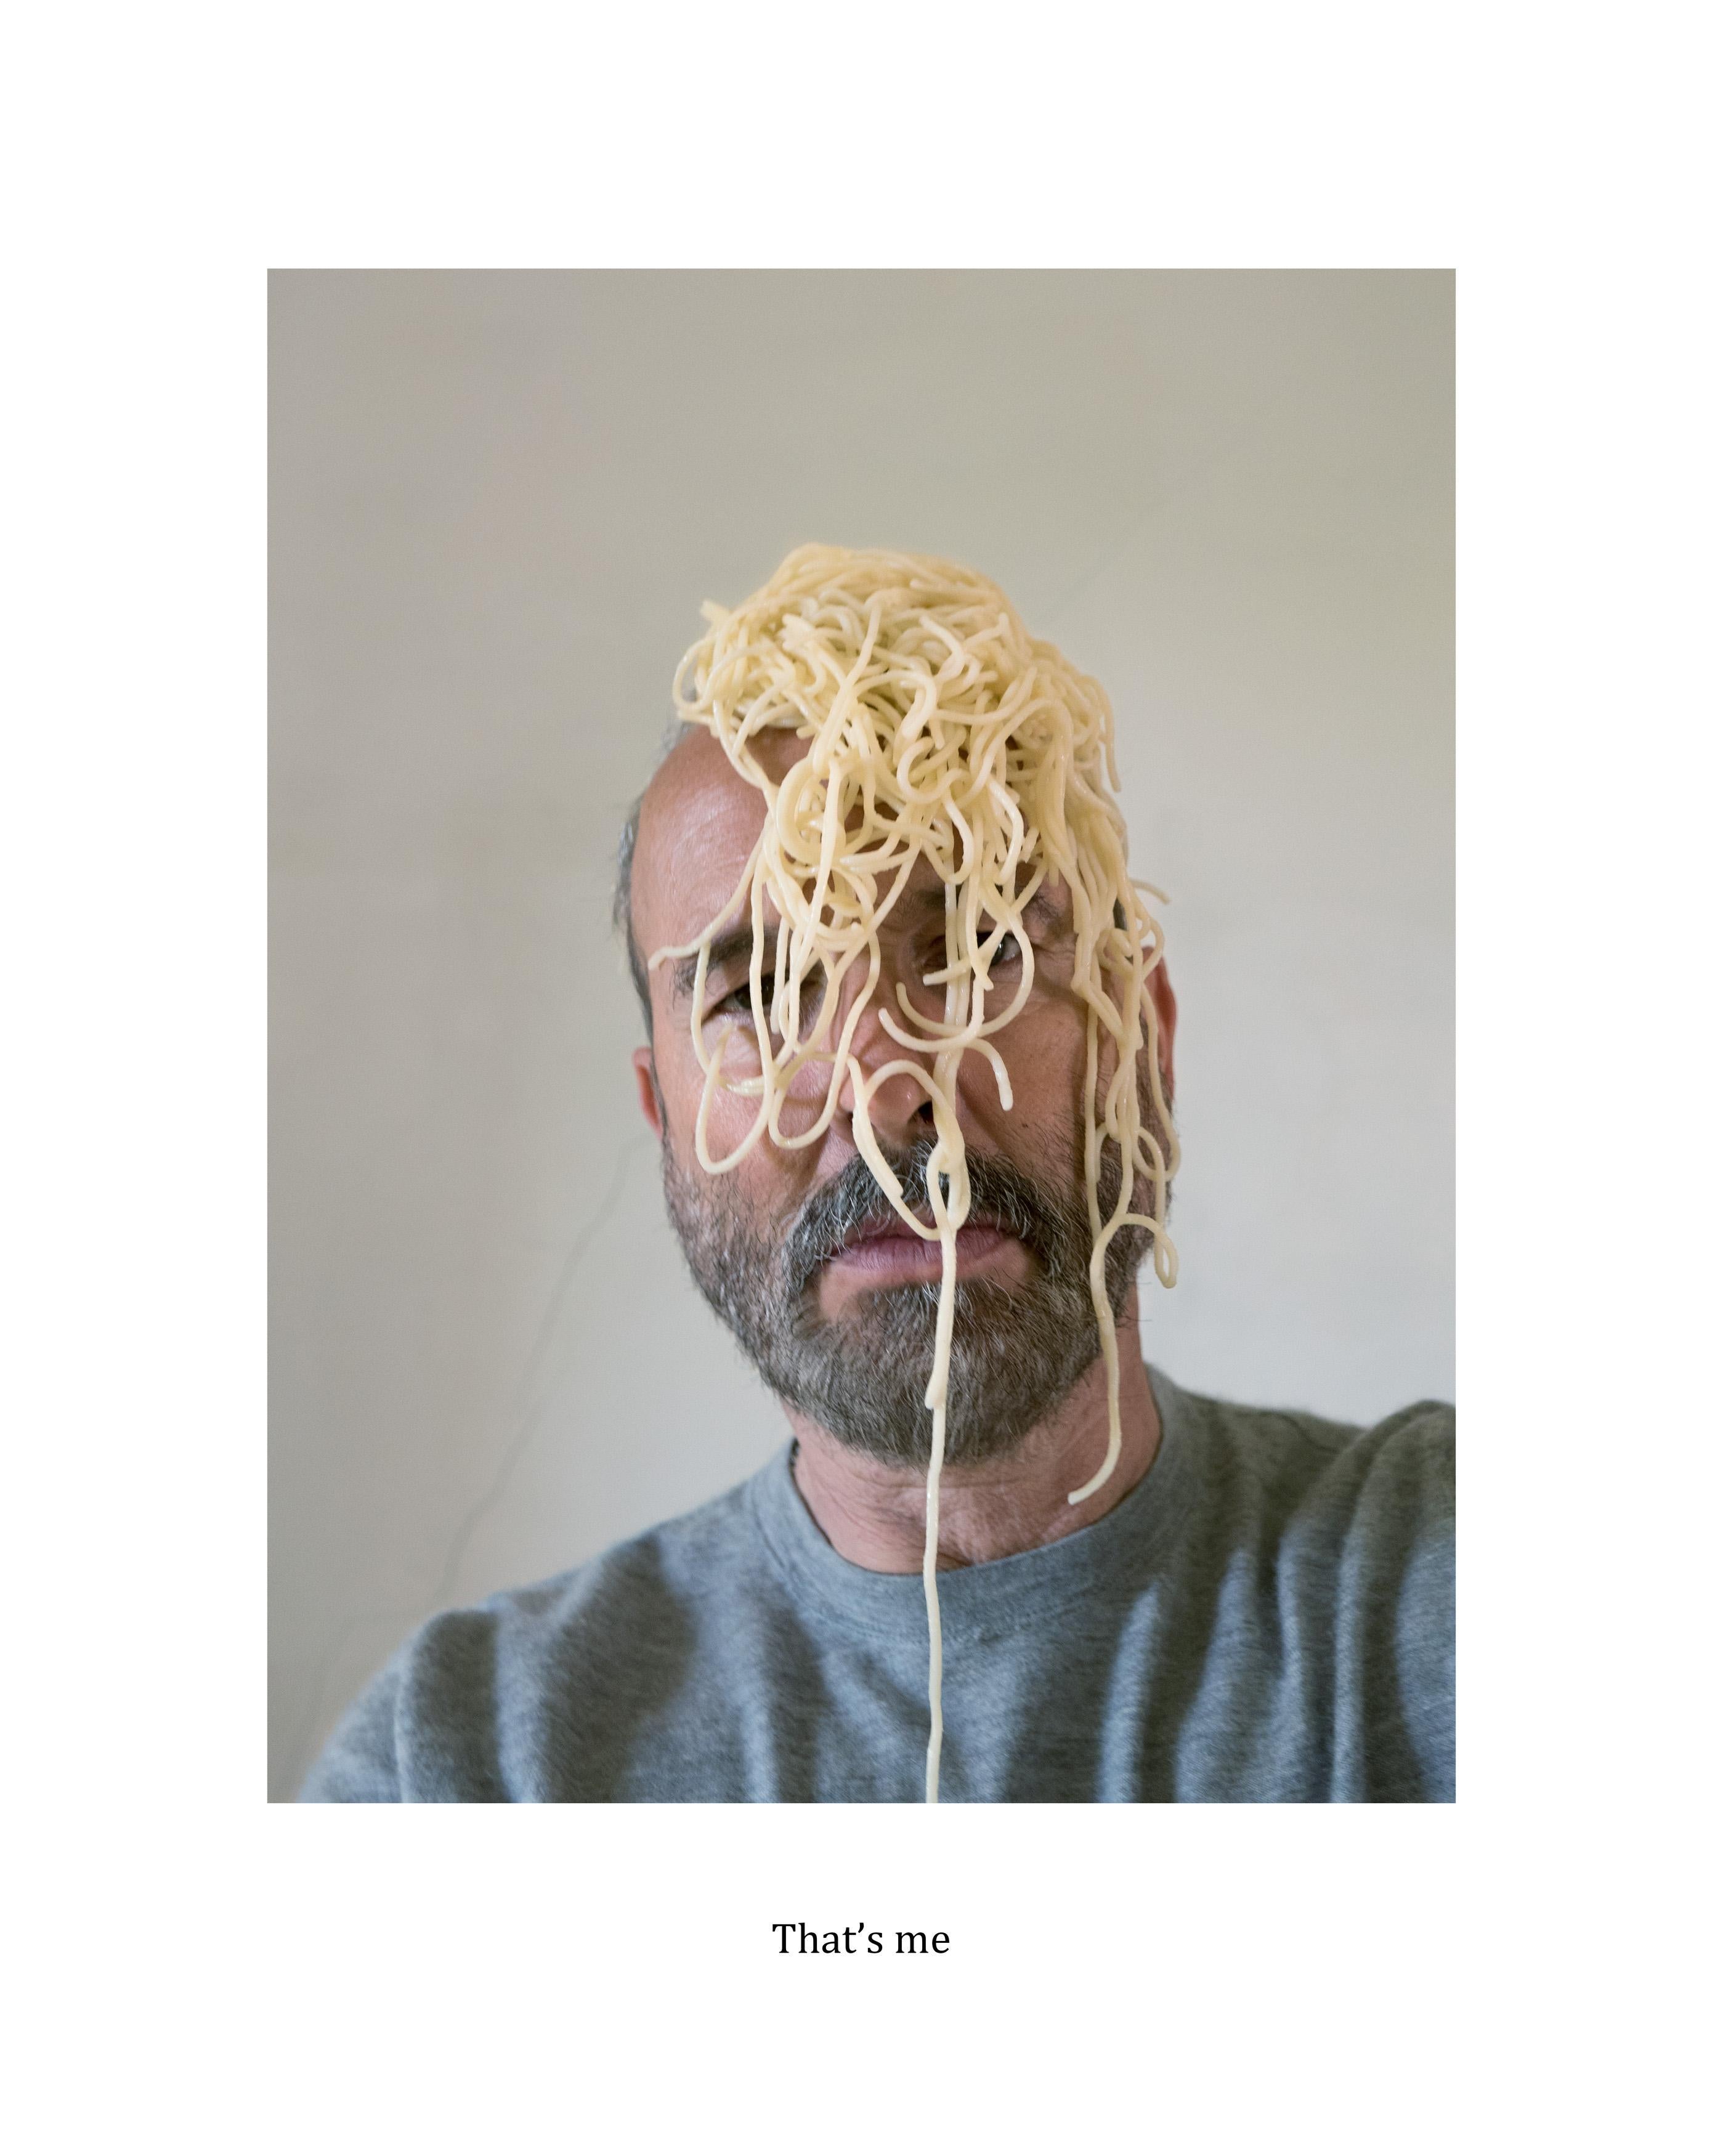 Erwin Wurm Portrait Photograph - Noodlesculpture (That's me)